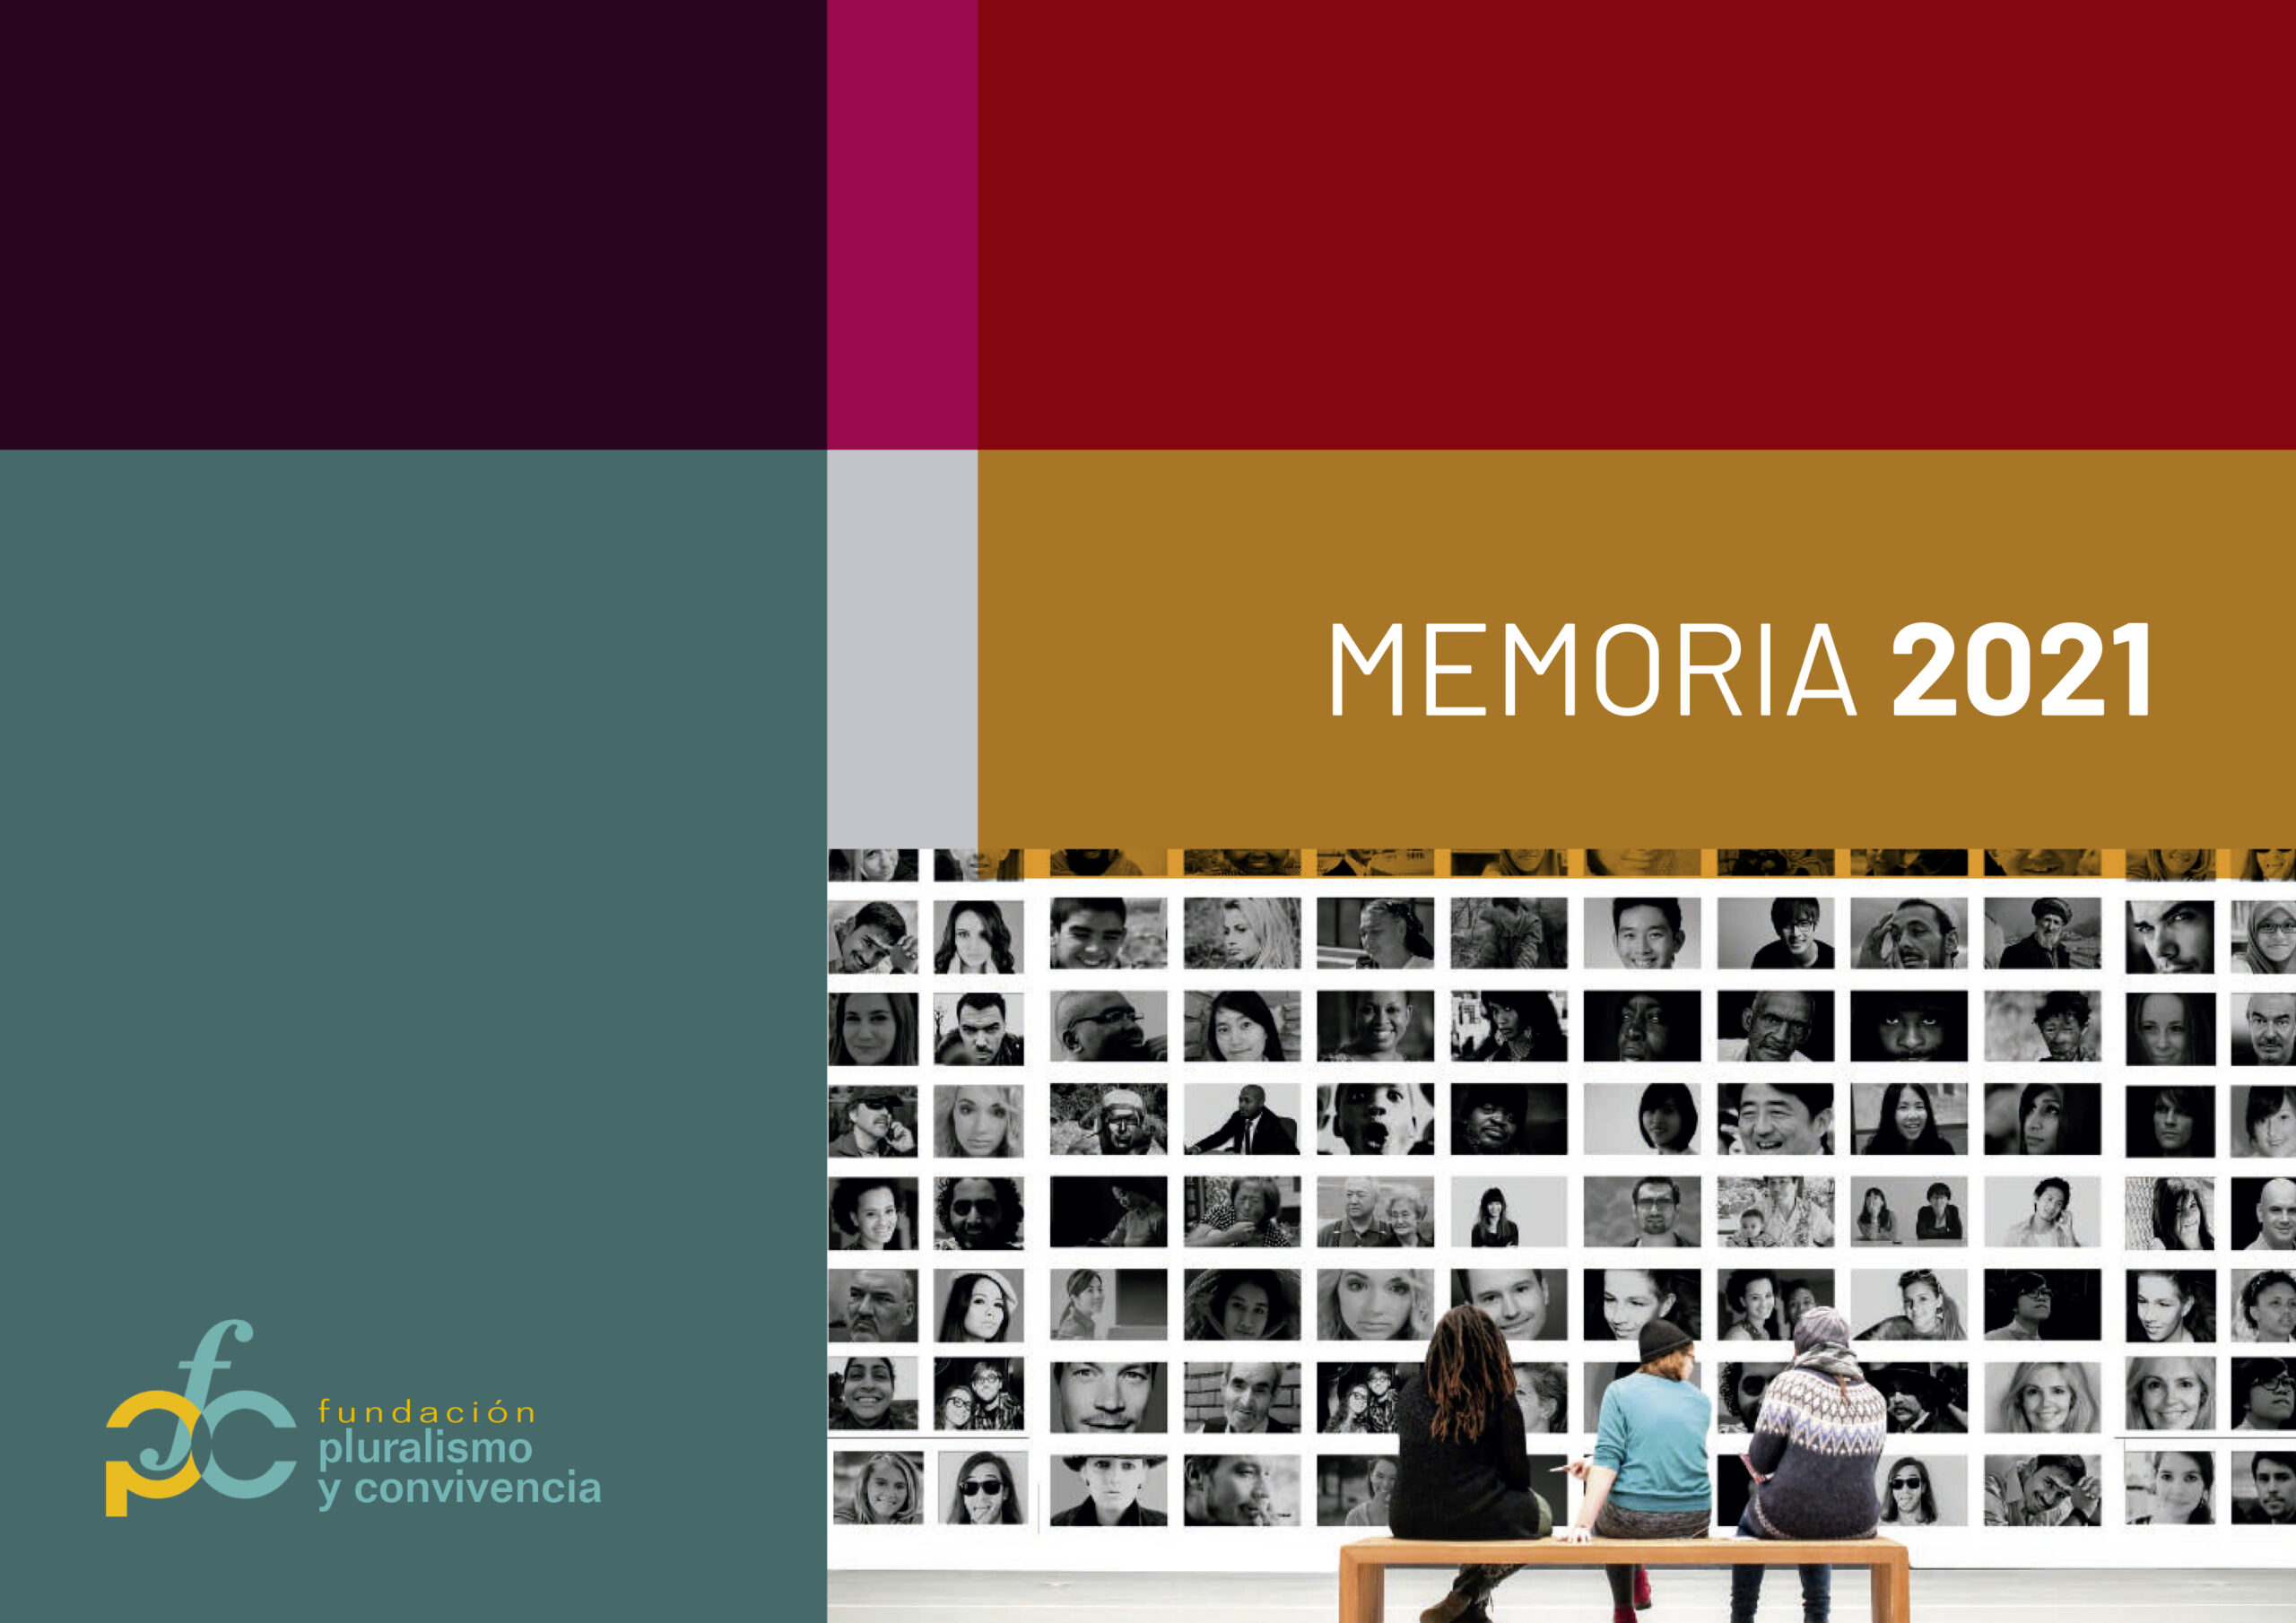 MEMORIA FUNDACIÓN PLURALISMO Y CONVIVENCIA 2021